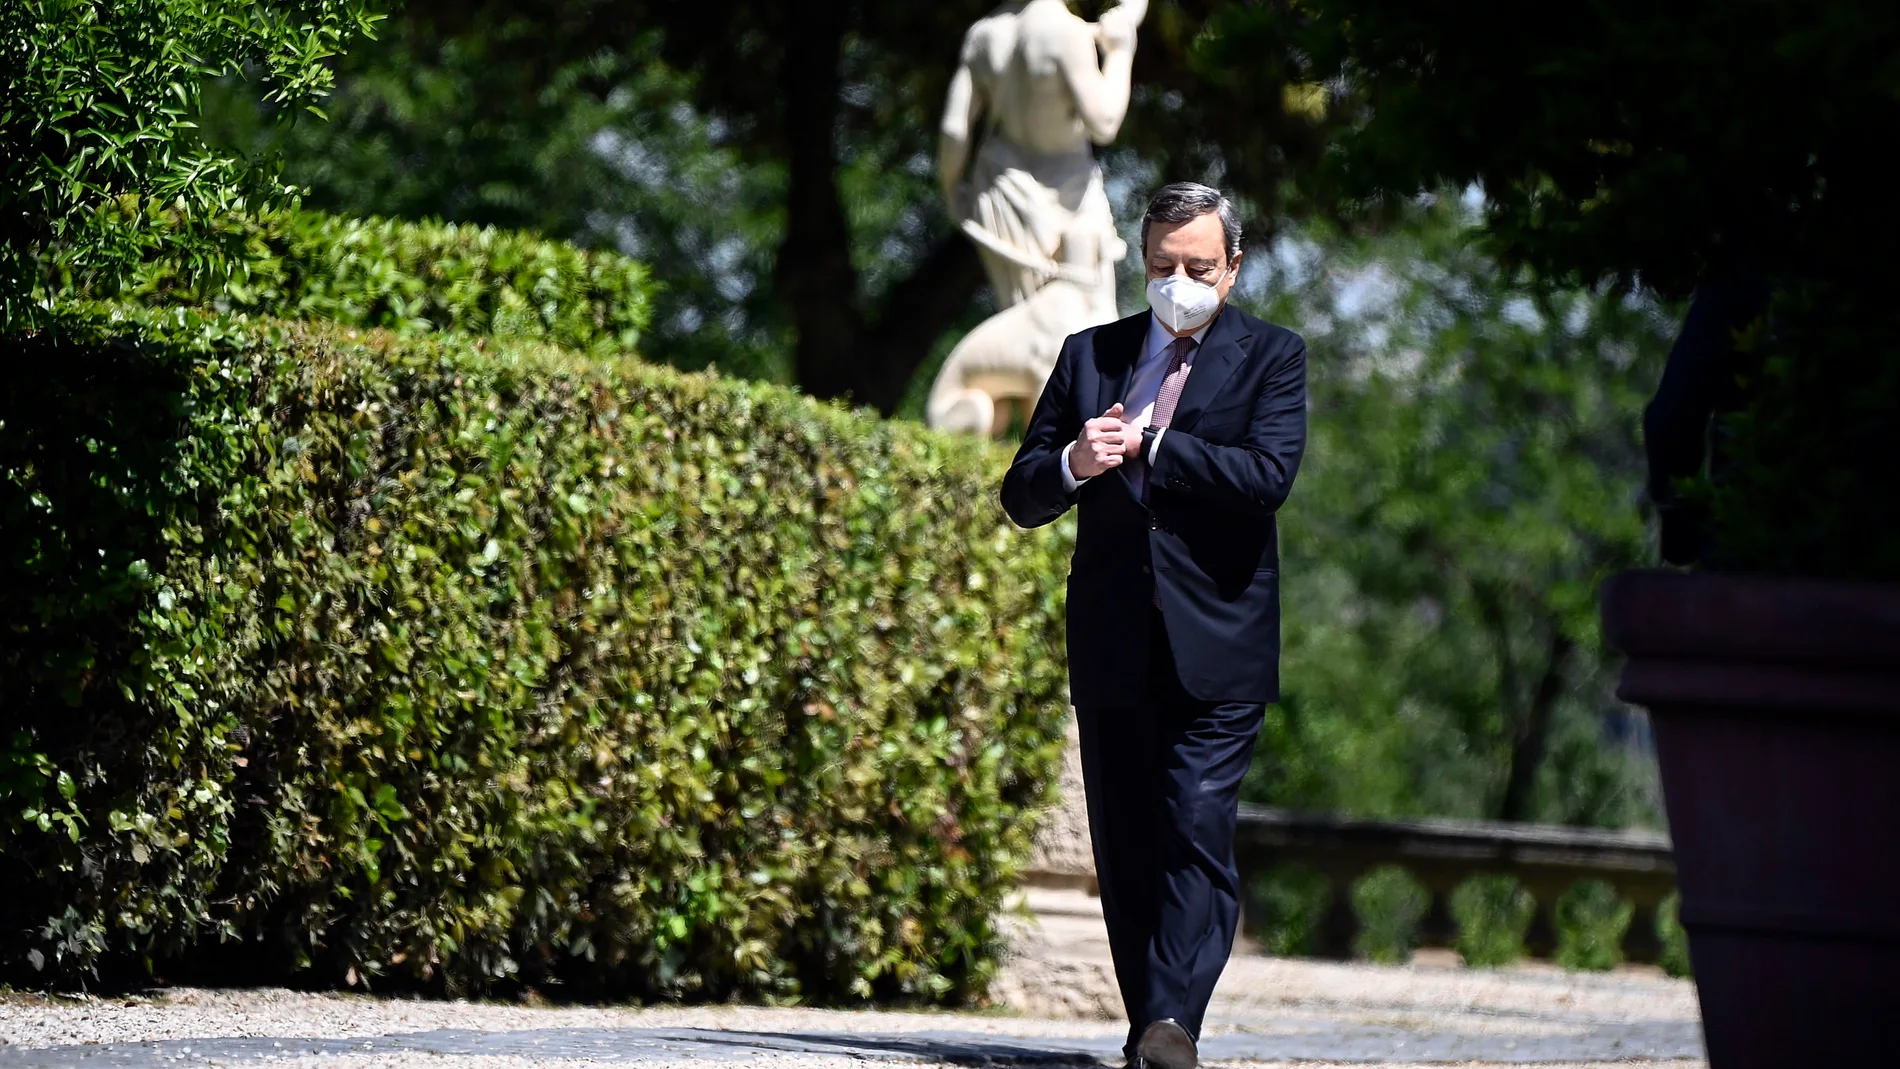 El "premier" italiano, Mario Draghi, ha reforzado la influencia europea de Italia en estos tres meses